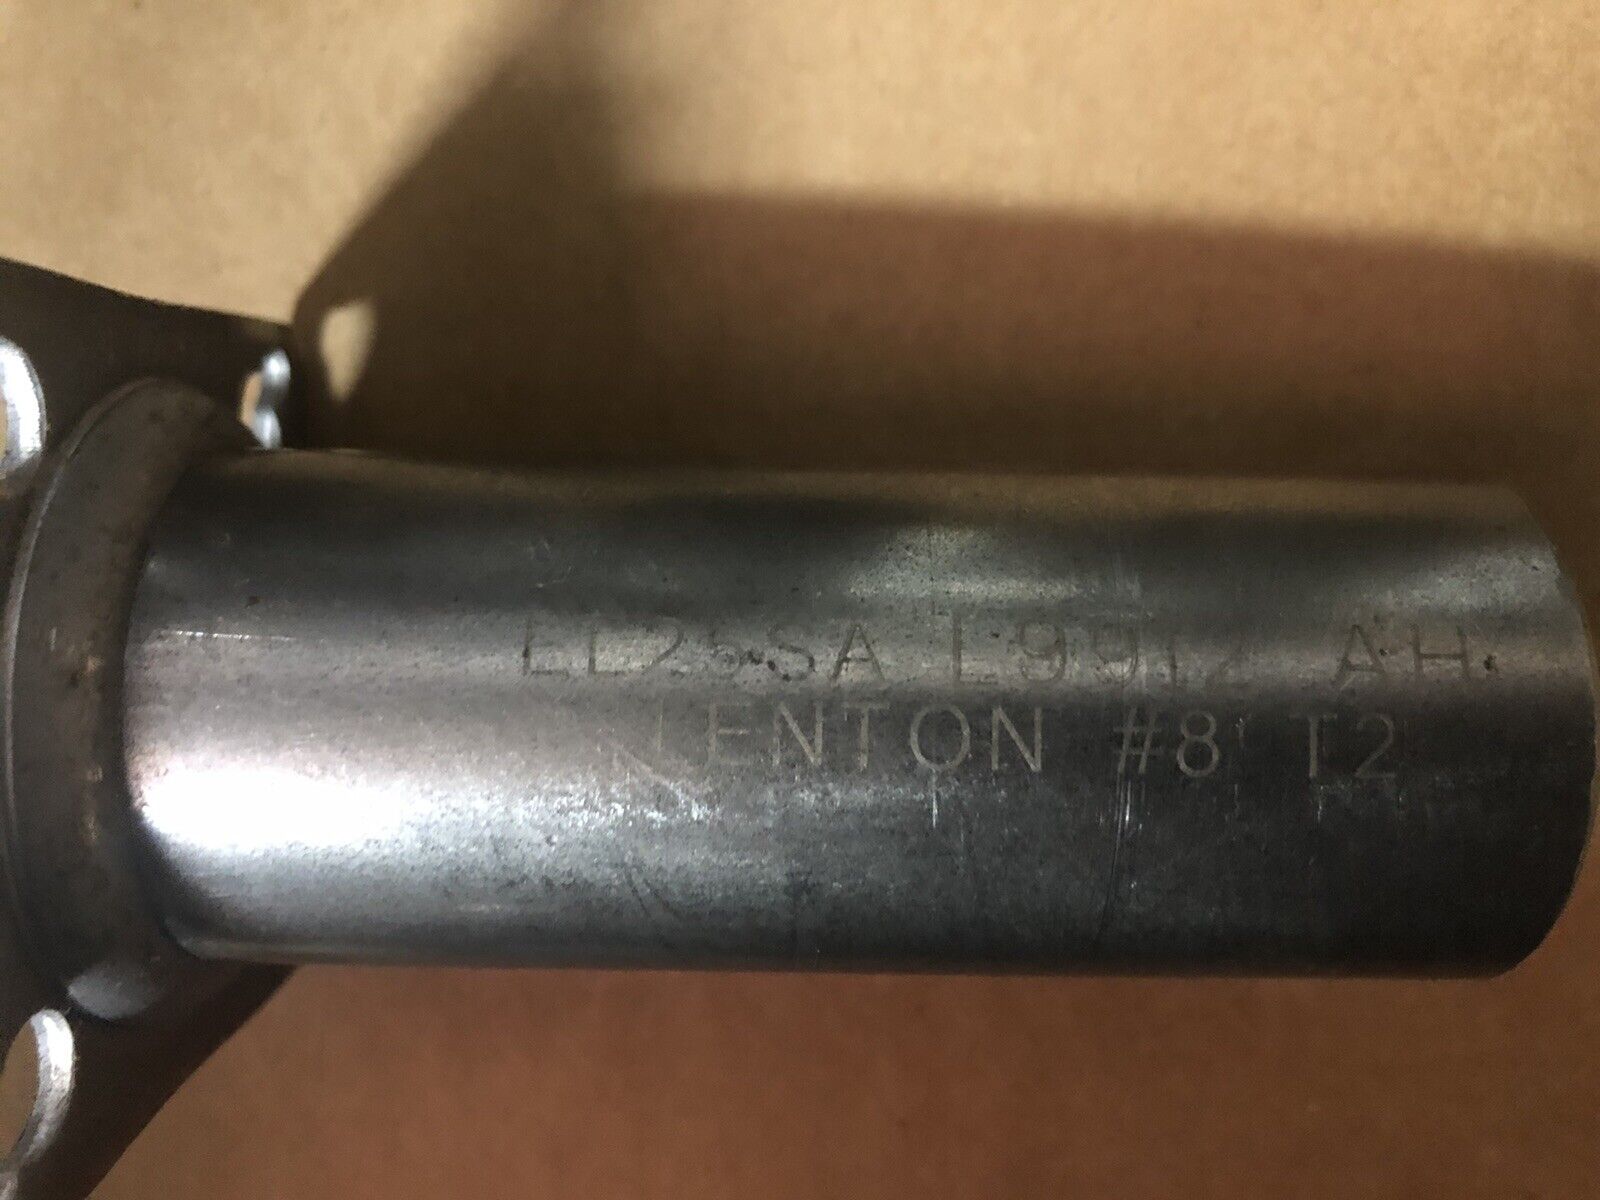 Lot of 12 - nVent Lenton #8 Rebar Coupler 25mm w/ Mounting Plate Part # EL25SA nVent / Lenton EL25SA - фотография #5